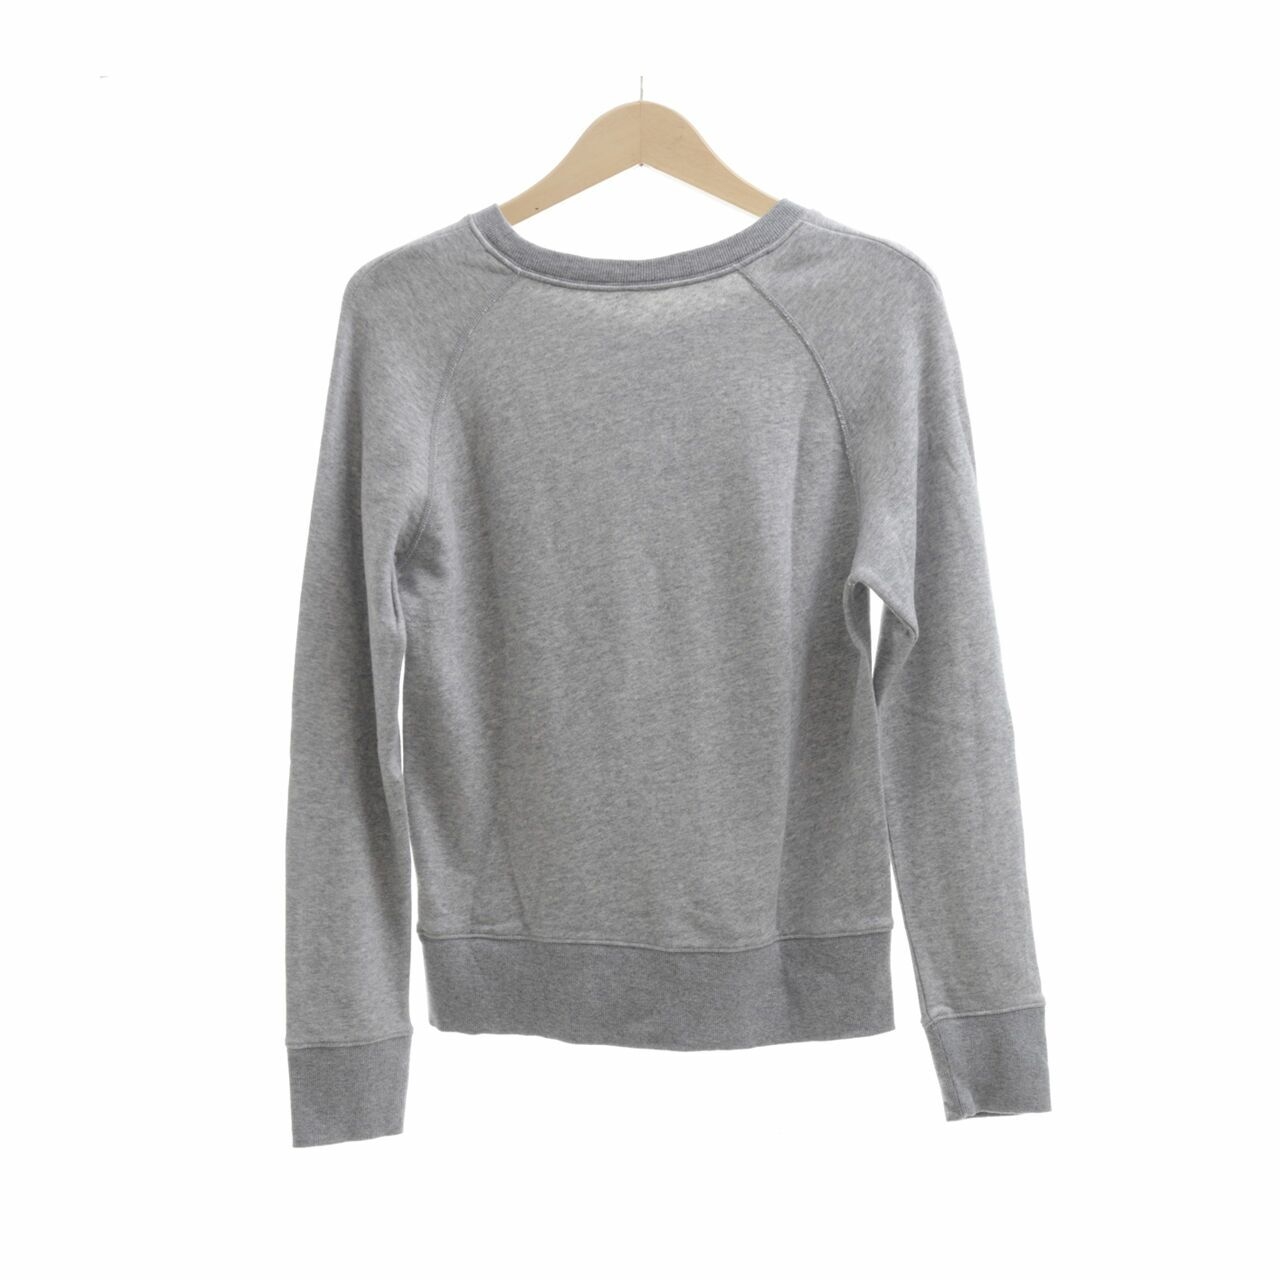 Muji Grey Sweater